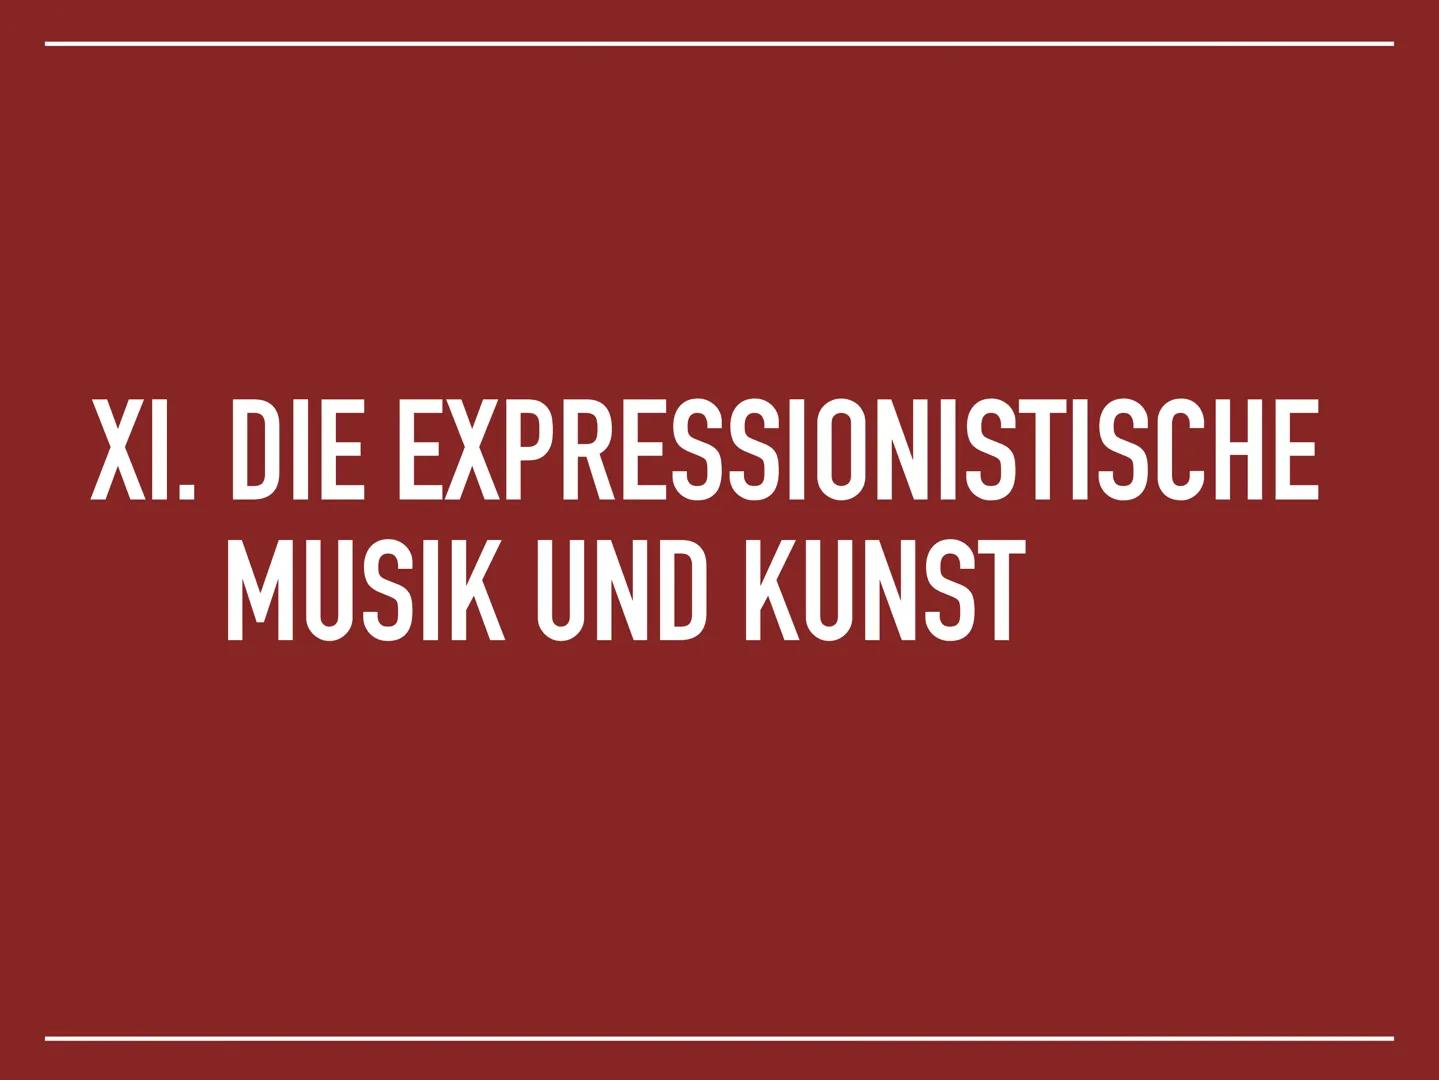 DER EXPRESSIONISMUS
1905 - 1925 DIE KUNST [DES EXPRESSIONISMUS]
GIBT NICHT DAS SICHTBARE
WIEDER, SONDERN MACHT
SICHTBAR.
Paul Klee DIE GLIED